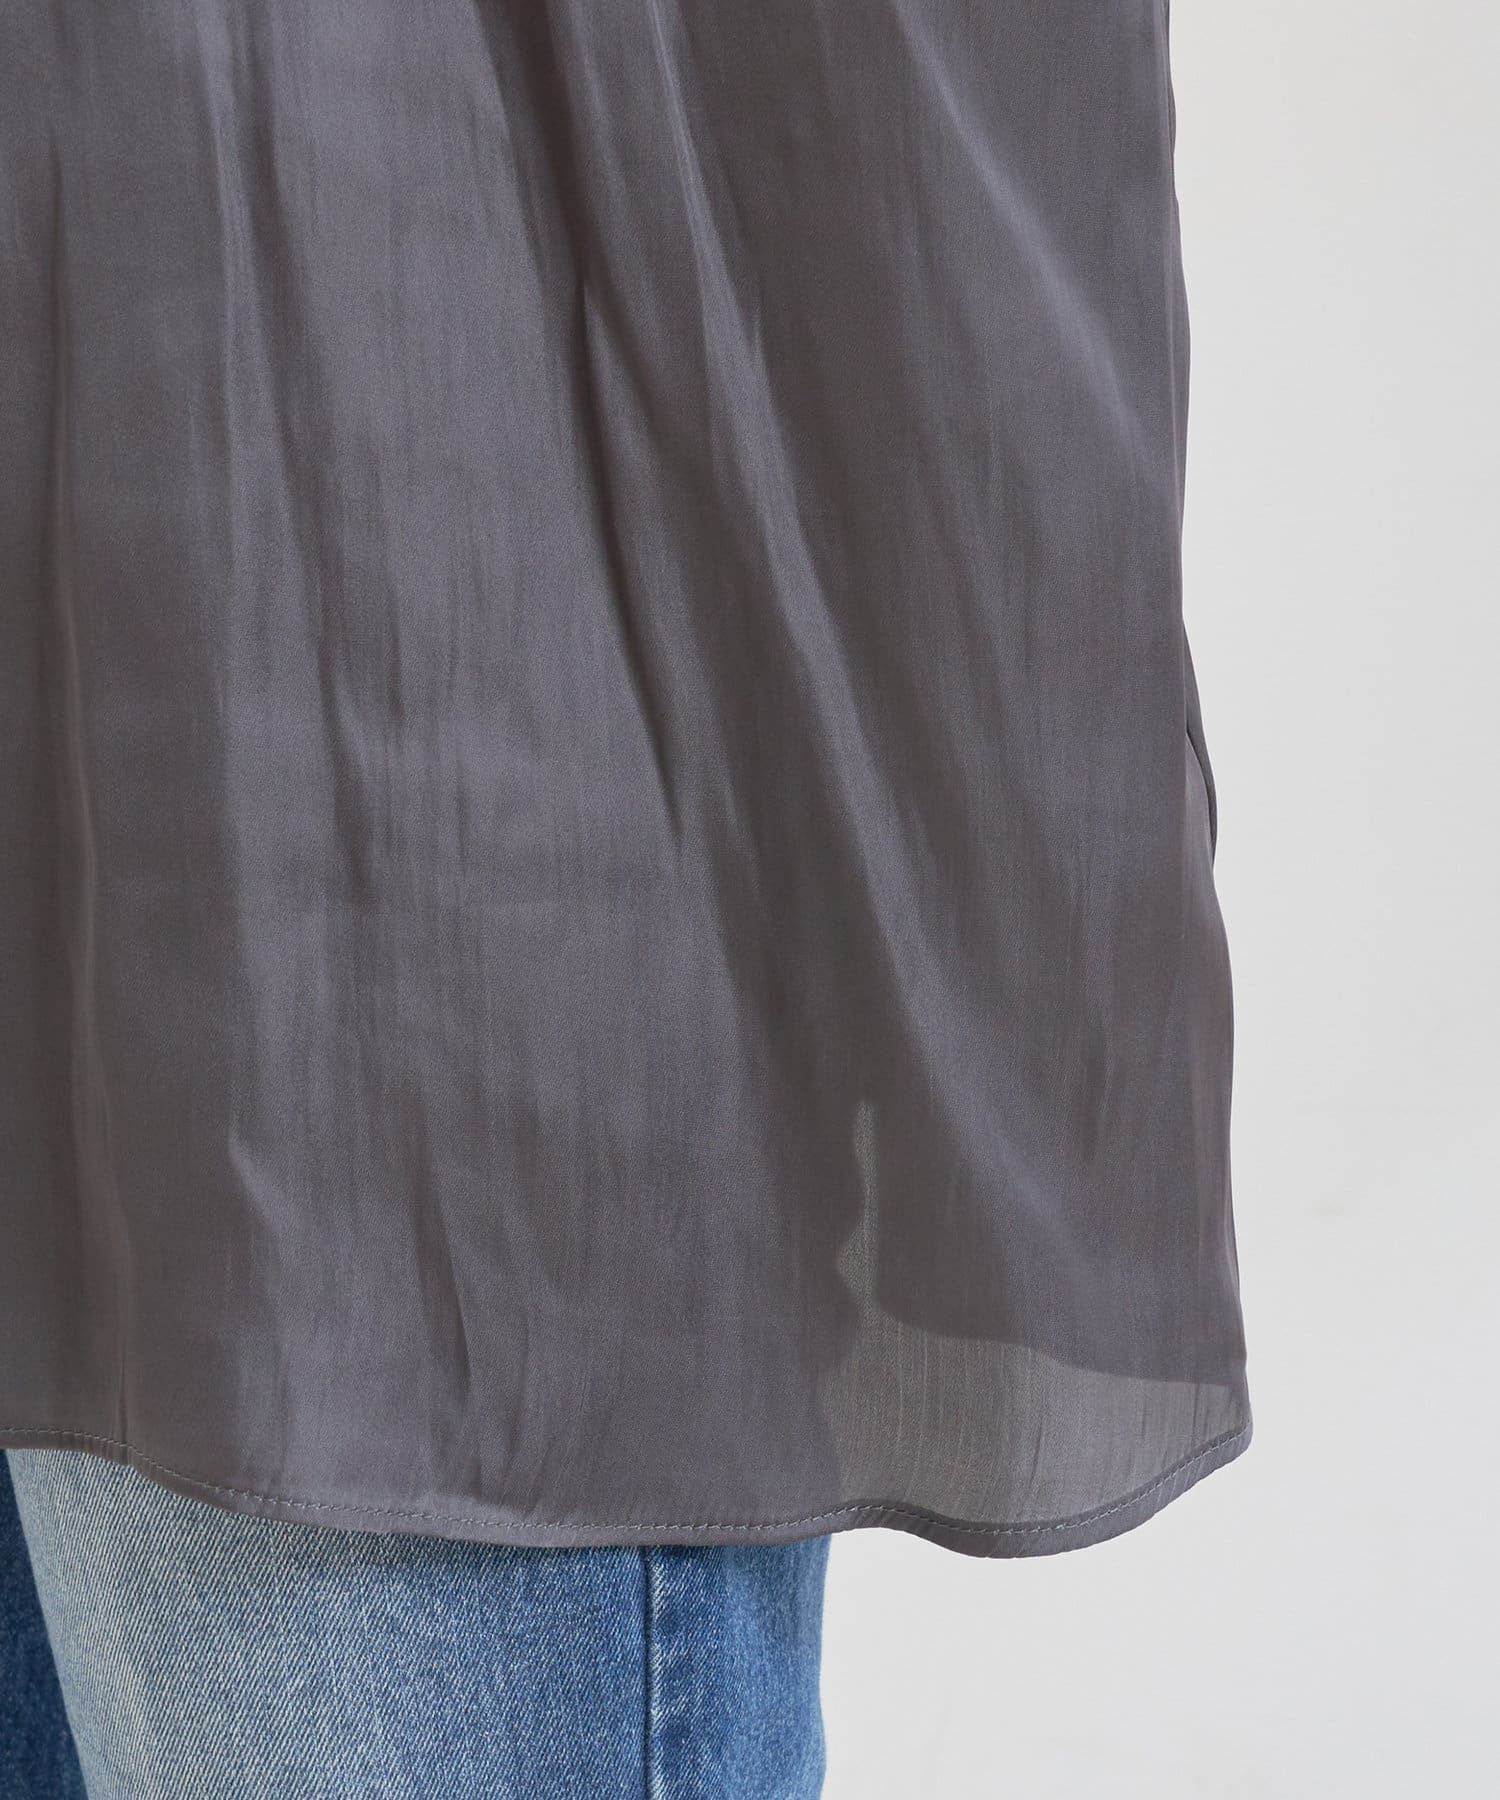 natural couture(ナチュラルクチュール) 【WEB限定】便利なシャーリングボリューム袖ブラウス